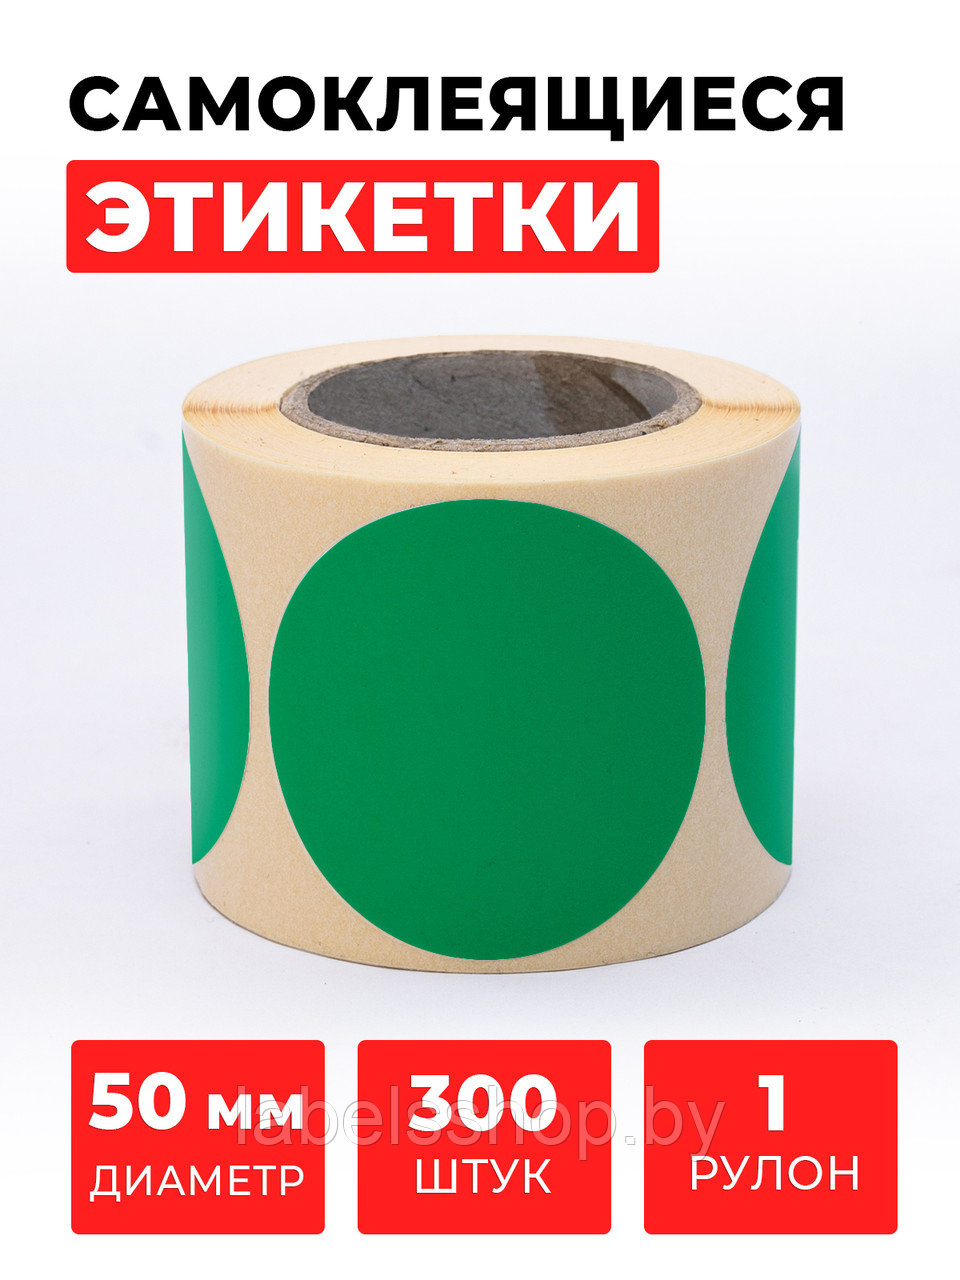 Круглые самоклеящиеся наклейки / этикетки в виде круга (D 50 мм), цвет зеленый, 300 шт в ролике.